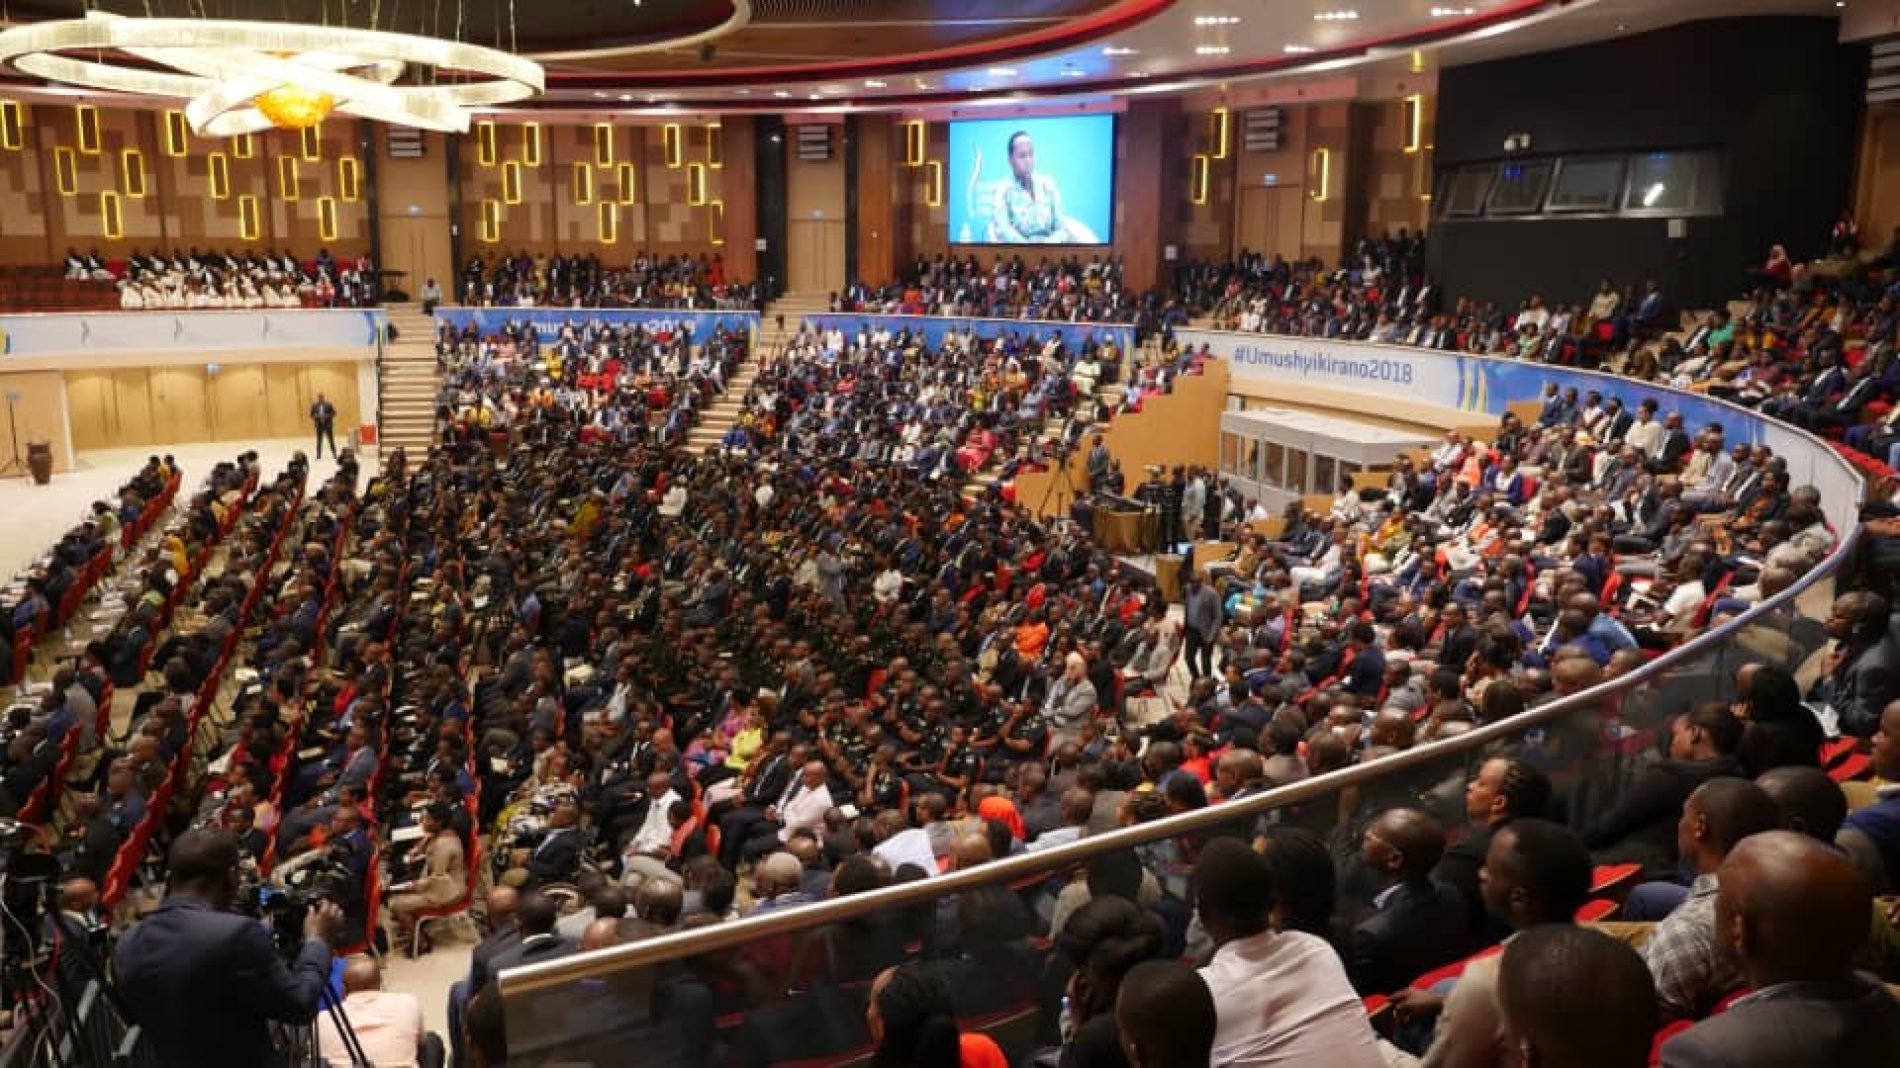 Umushyikirano 2018 : Le Rwanda, un pays qui articule réconciliation et développement